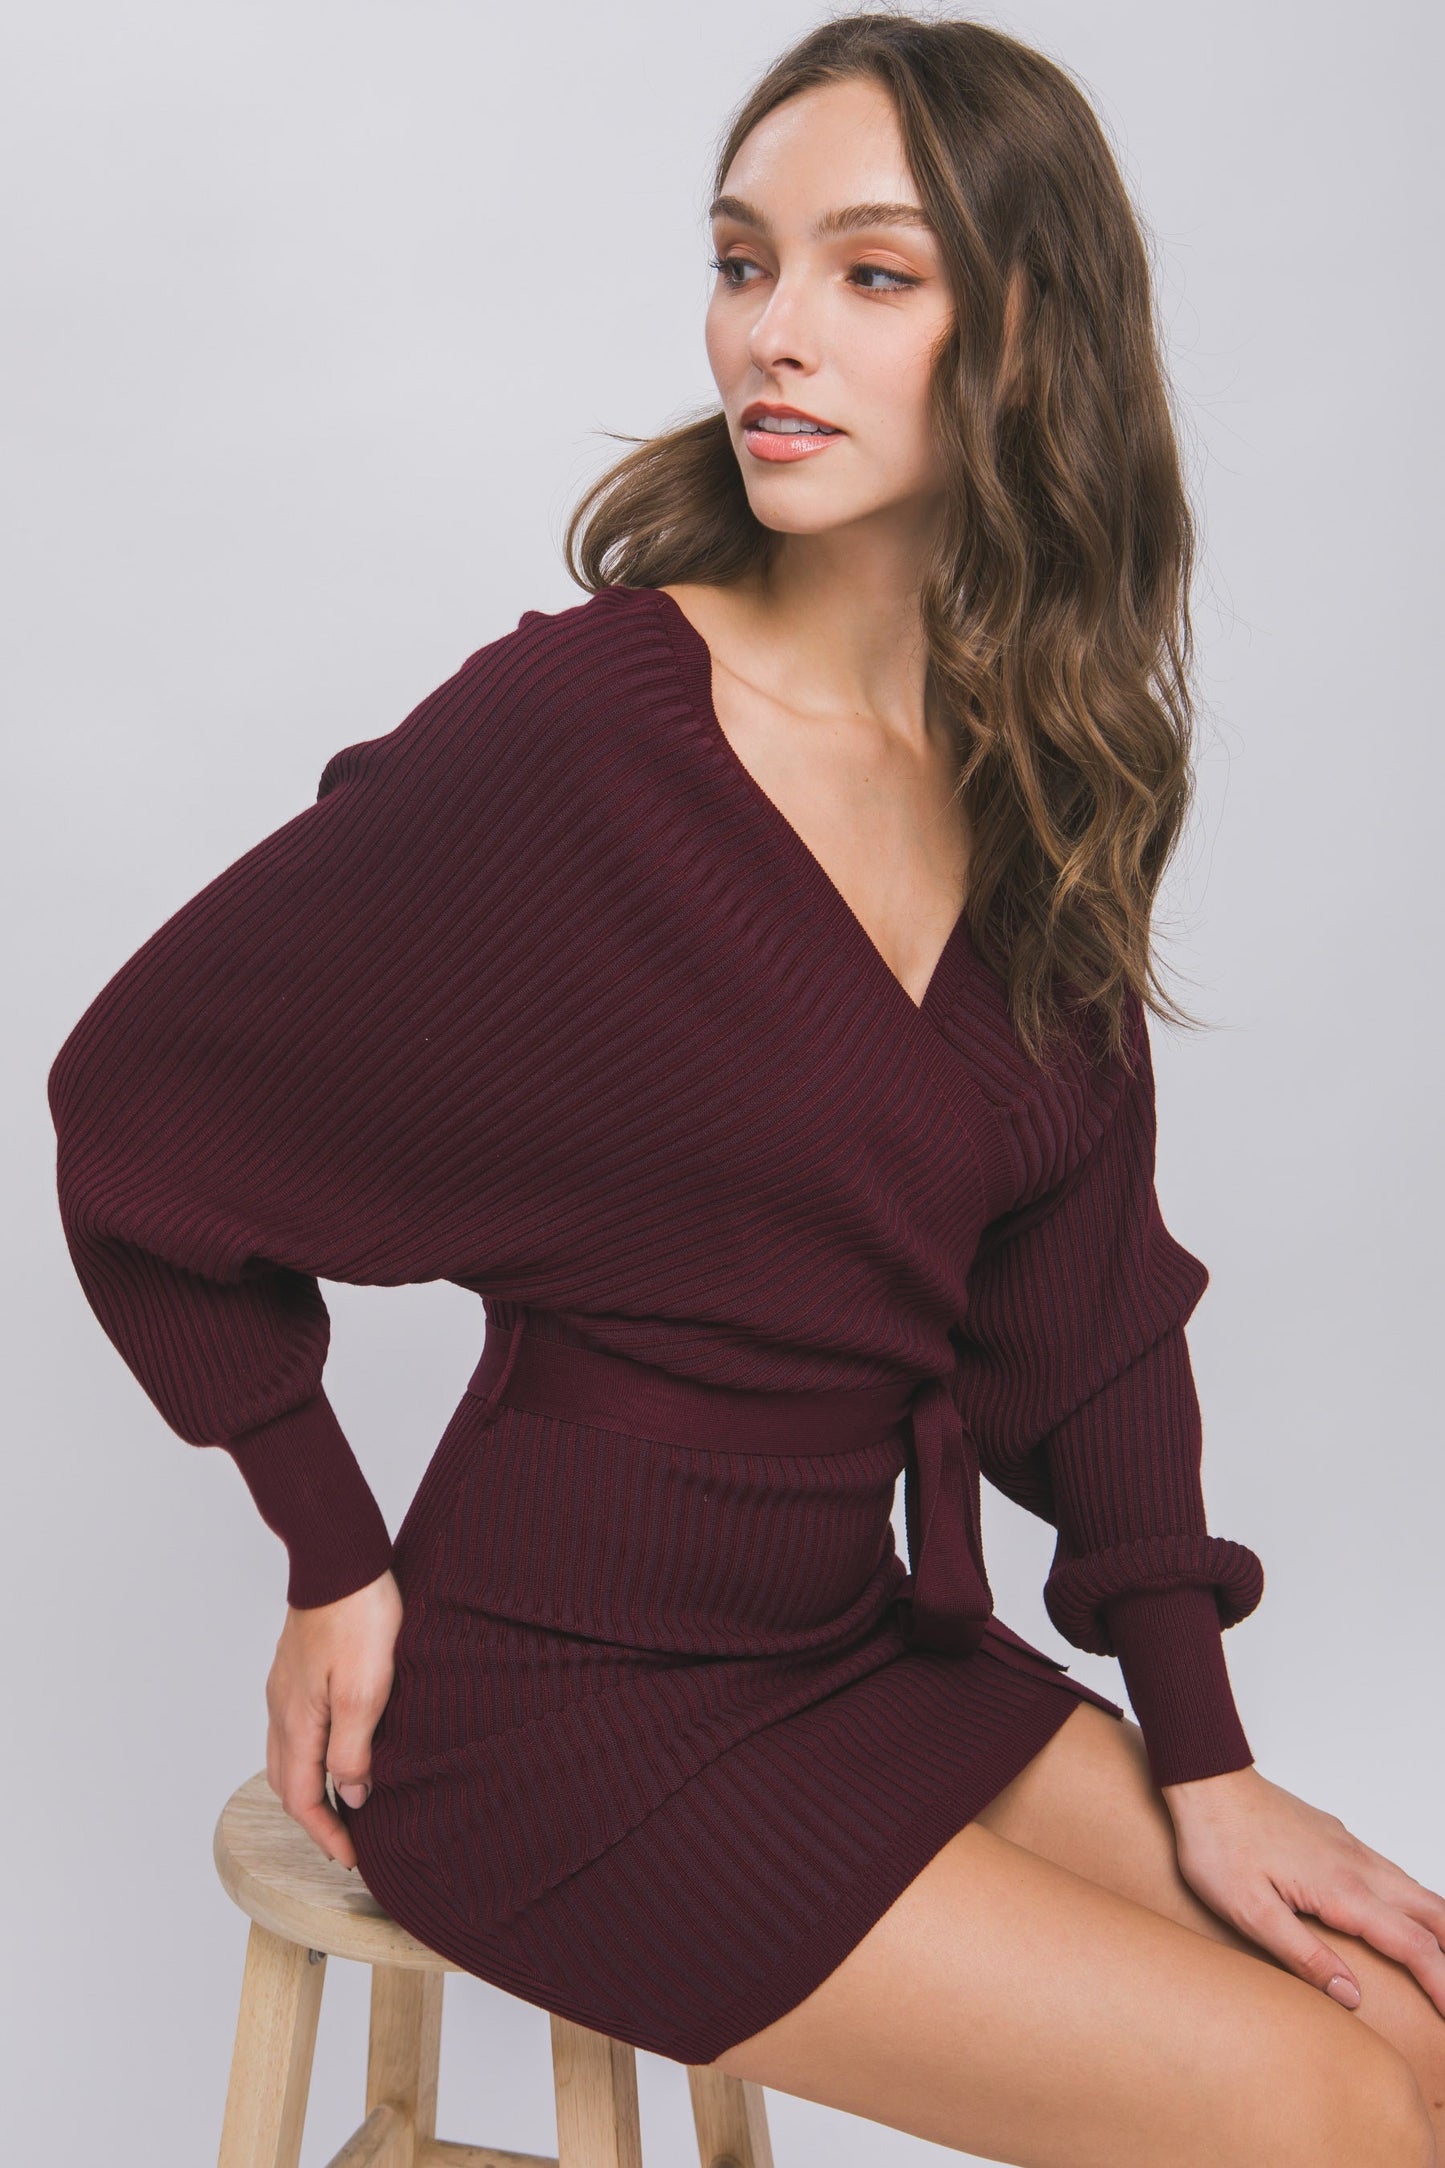 Leticia off shoulder sweater dress -wine (best seller